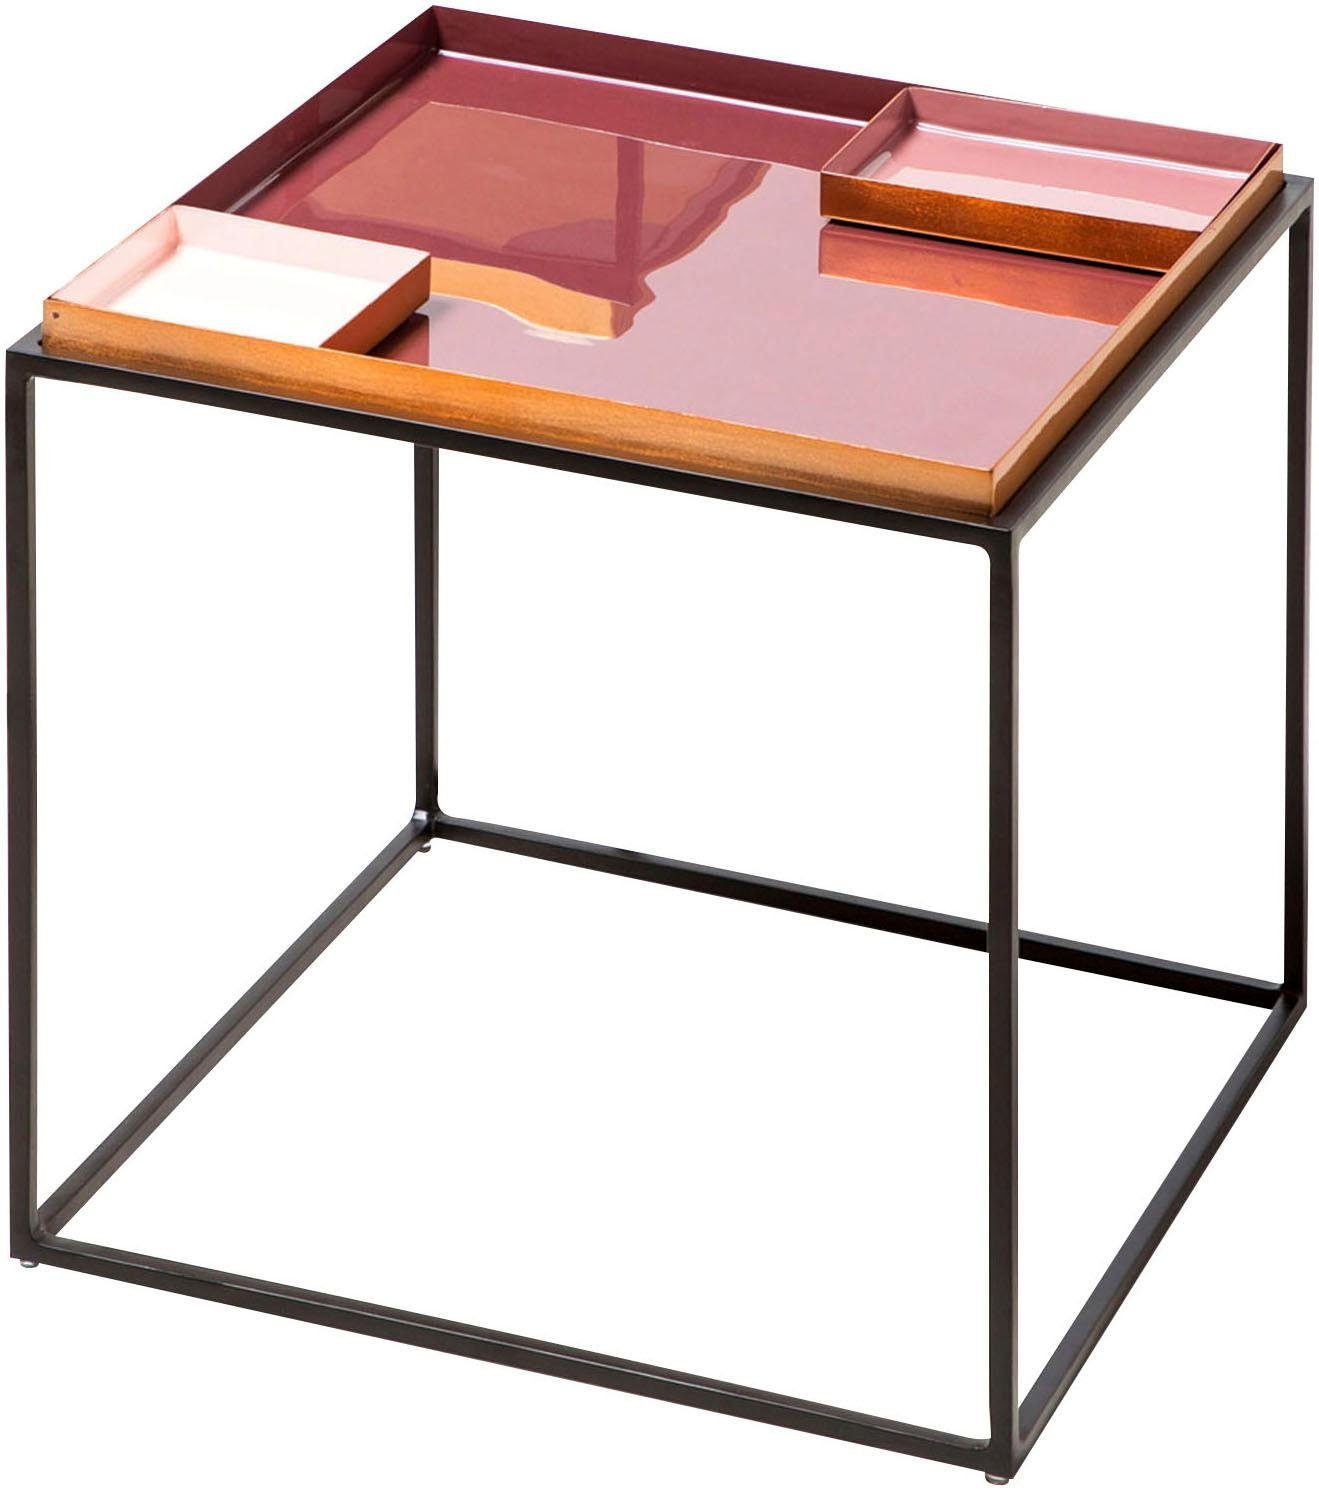 Kayoom Beistelltisch Famosa, Bunter Tisch, Schalenmaße: 11 x 11 x 2 / 15,8 x 11 x 2 cm